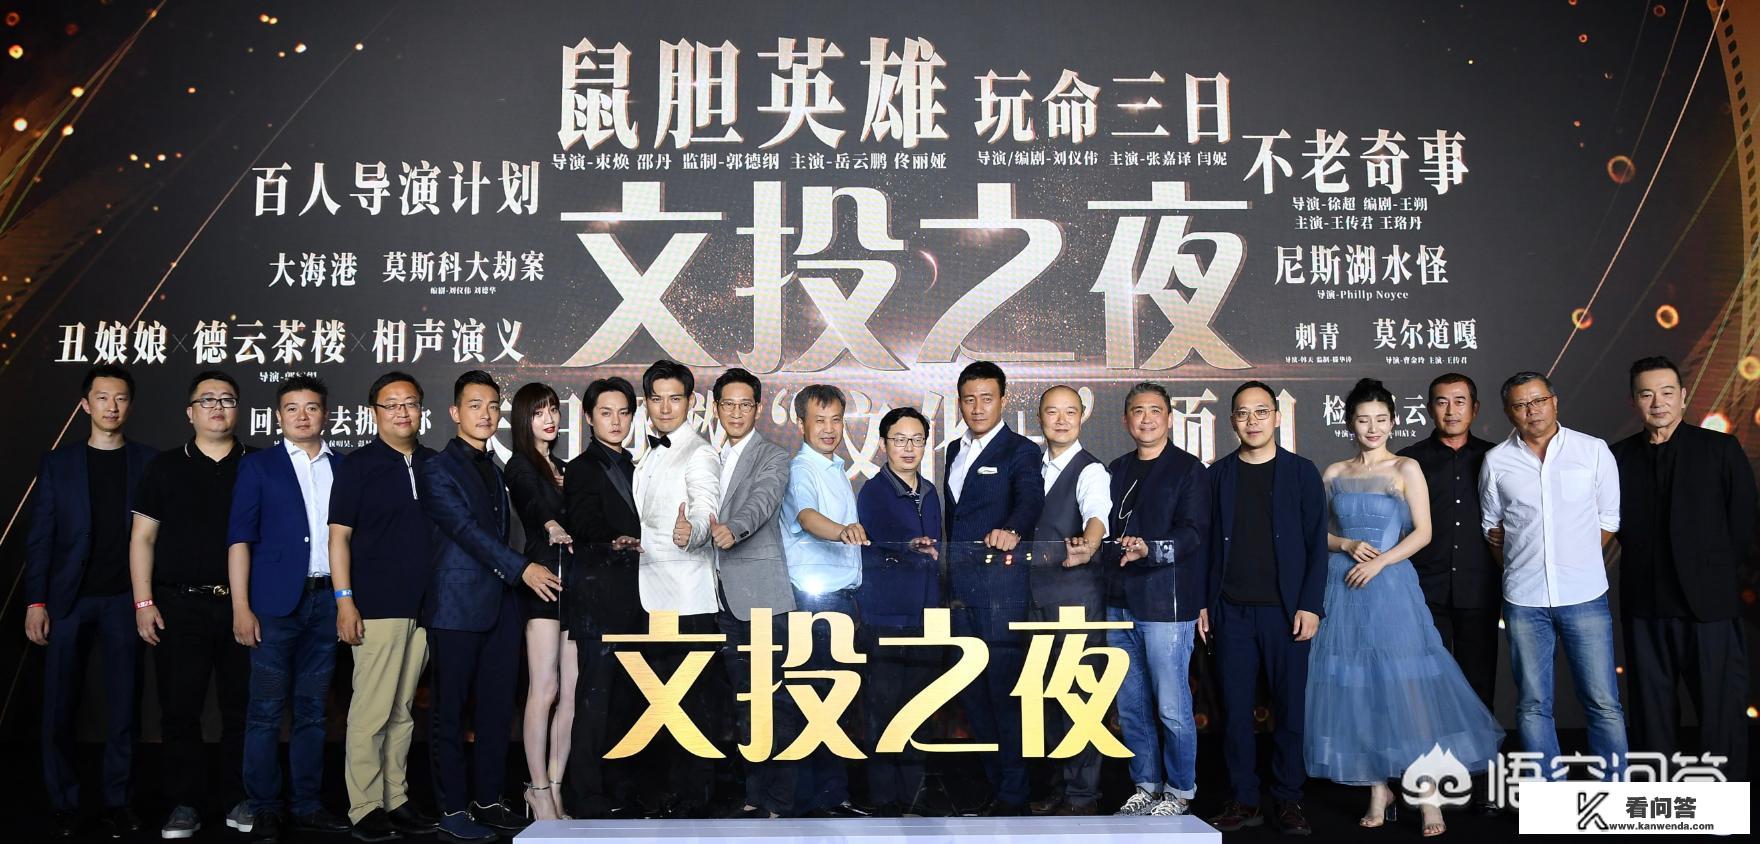 郭德纲、郭麒麟参加上海电影节，宣布三大影视项目，德云社是要多元发展吗？你怎么看？